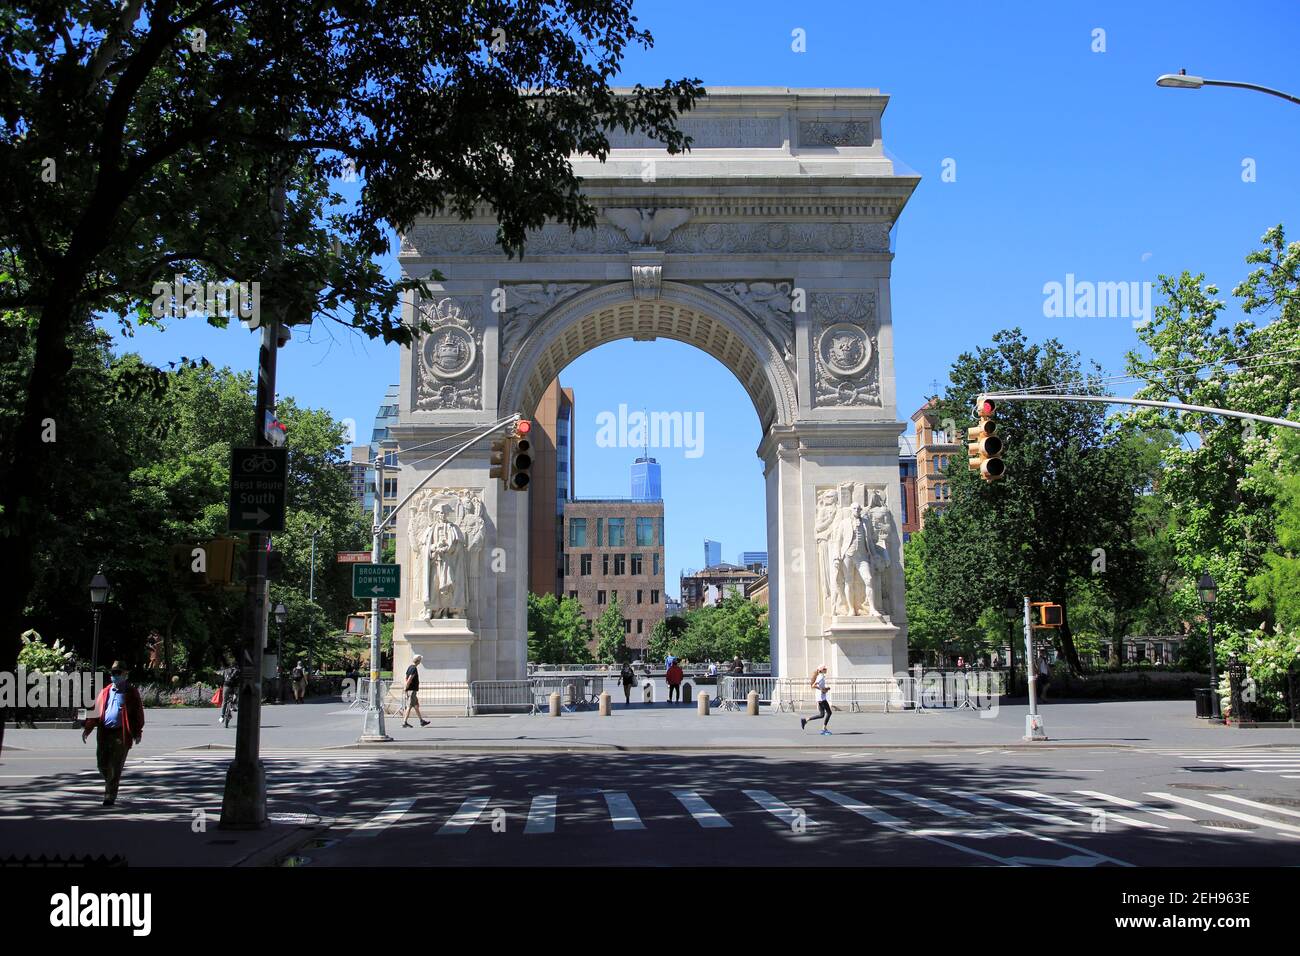 Washington Square Arch, Washington Square Park, Greenwich Village, Manhattan, New York City, ÉTATS-UNIS Banque D'Images